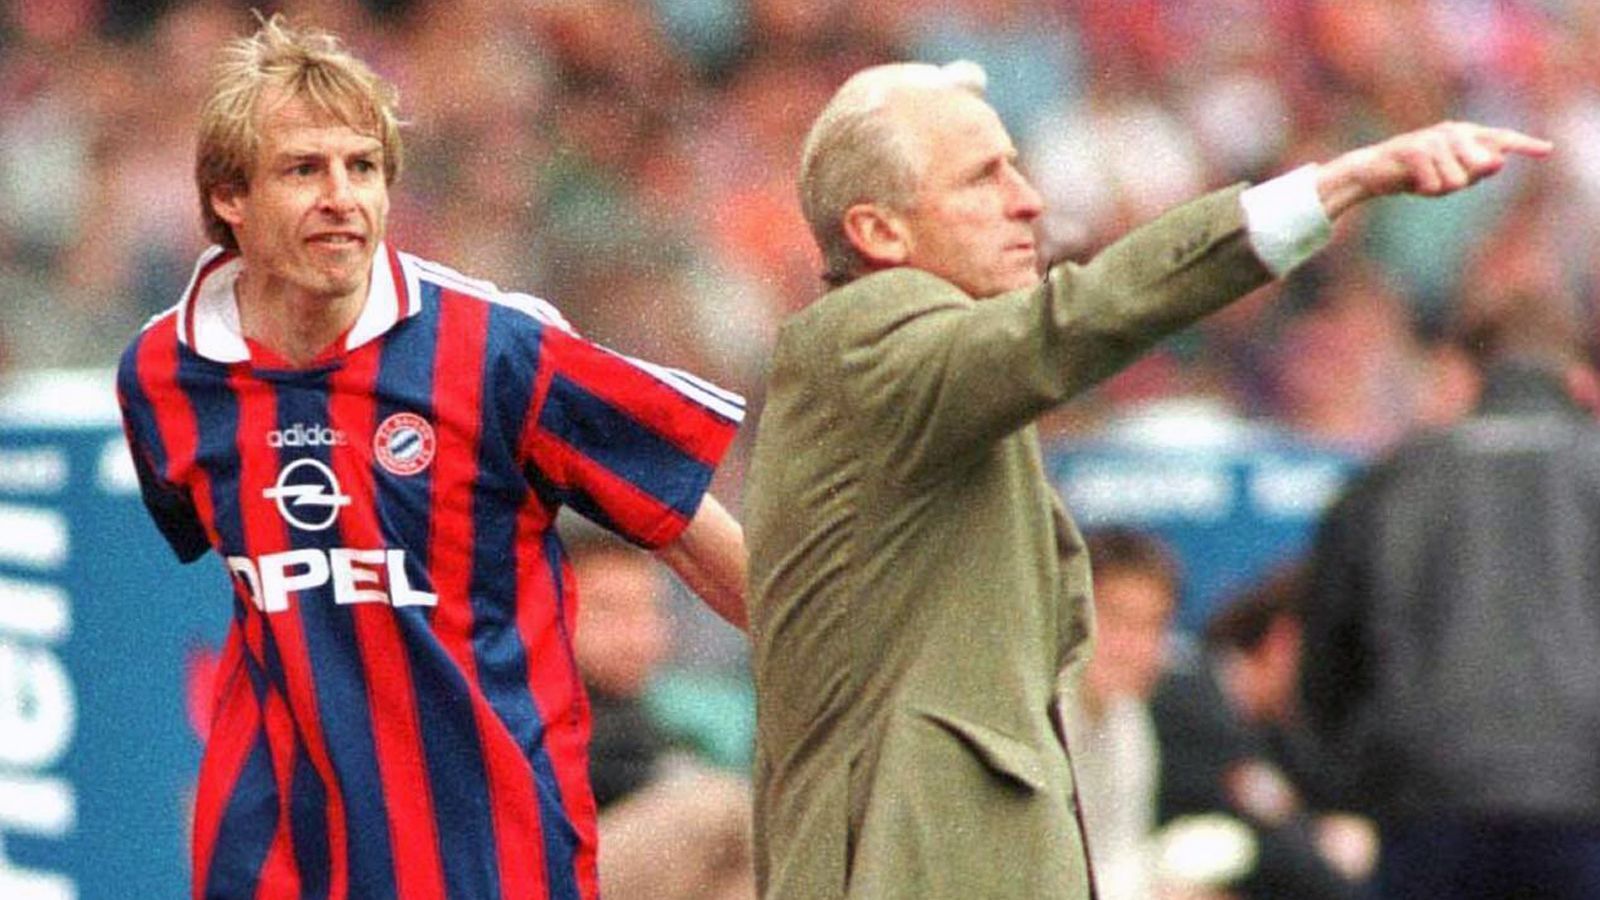 
                <strong>Jürgen Klinsmann</strong><br>
                Wer an die Zeit von Giovanni Trapattoni beim FC Bayern zurückdenkt, dem kommt gewiss erst seine legendäre Pressekonferenz in den Sinn. Und gleich danach die Auswechslung Jürgen Klinsmanns im Mai 1997 gegen Freiburg. Als der Stürmer beim Stand von 0:0 vom Feld geholt wurde, verlor er die Nerven und trat frustriert in eine Werbebande, aus der er seinen Fuß nur mit Mühe wieder herausbekam. Das symbolische Ende der Klinsmann-Ära beim Rekordmeister. Er verließ die Bayern im Sommer 1997 nach 84 Pflichtspielen und 48 Toren. Klinsmann kehrte im Sommer 2008 als Trainer zurück, wurde aber nach nicht einmal einer Saison gefeuert. Nach Klinsis zweitem Aus in München gab es die Abrechnung durch Uli Hoeneß: "Wenn Klinsmann Obama ist, dann bin ich Mutter Teresa." Moderator Günter Jauch hatte den geschassten Bayern-Coach zuvor mit US-Präsident Barack Obama verglichen.
              